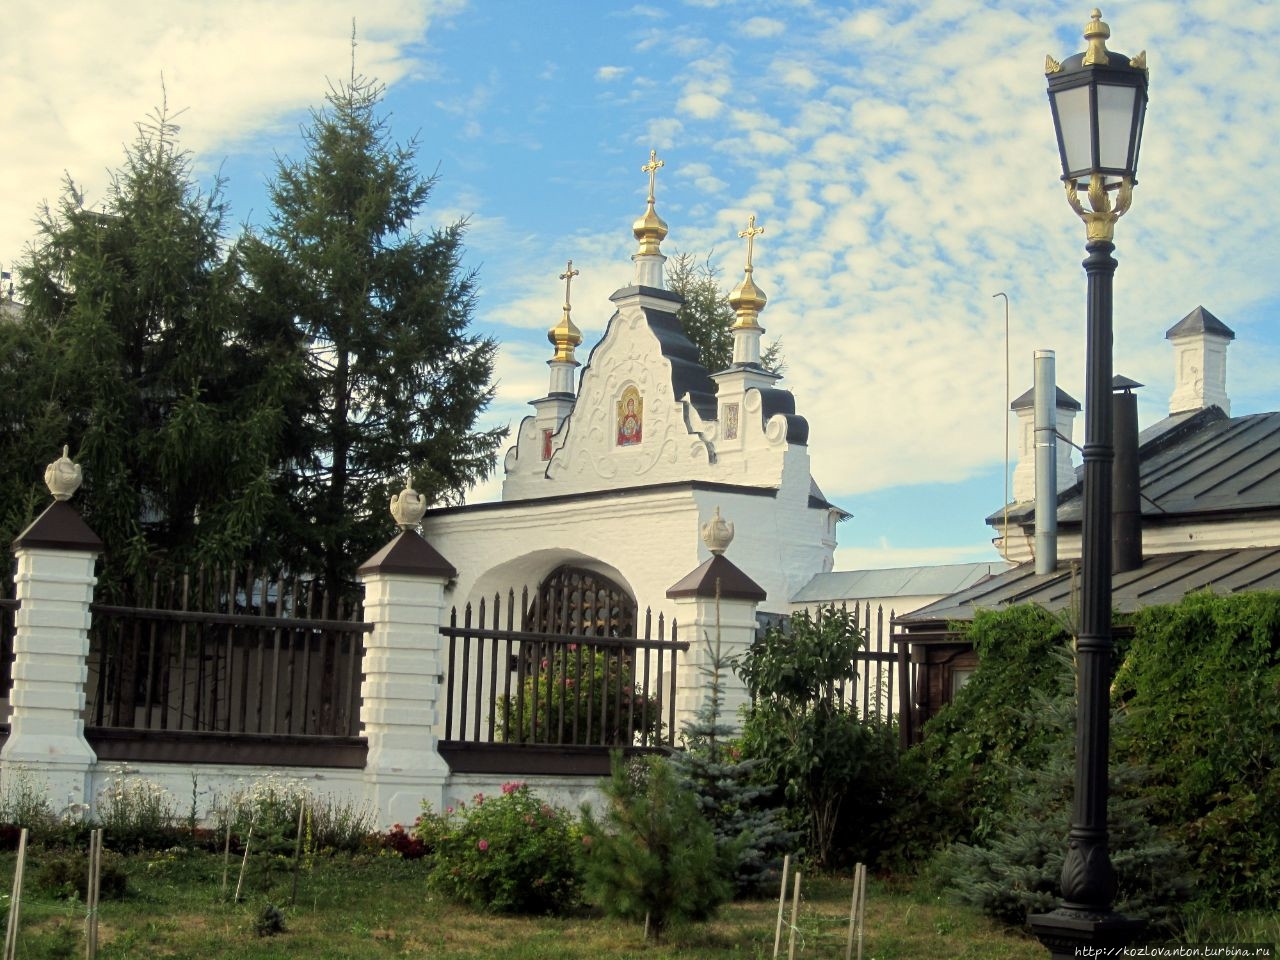 Так выглядят Северные святые ворота внутри Кремля. Тобольск, Россия